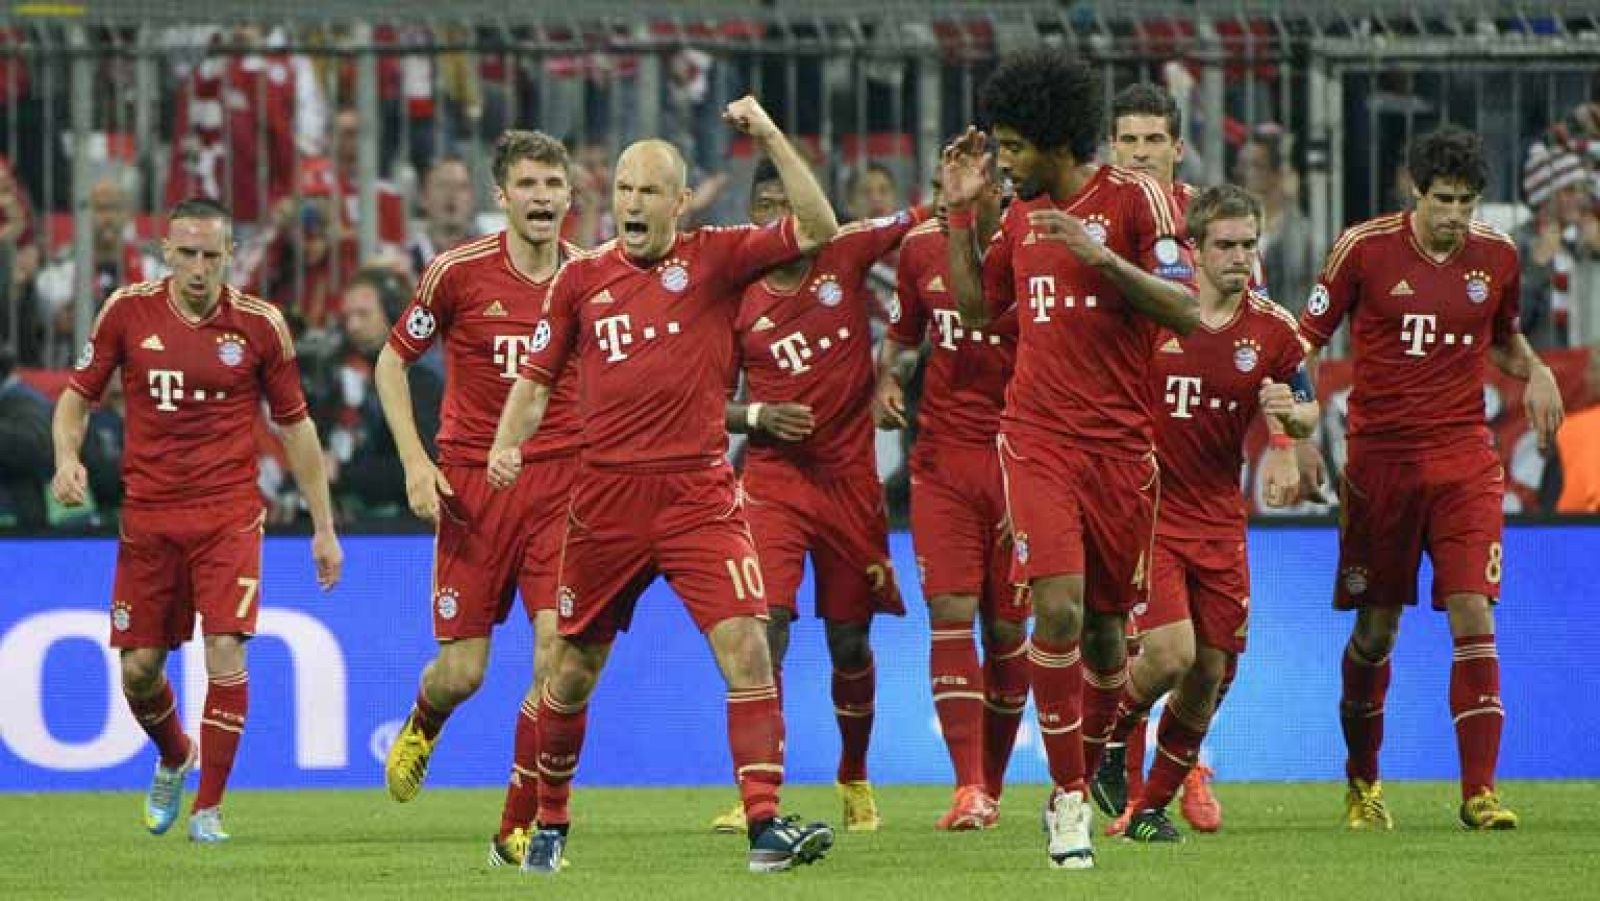 El jugador del Bayern de Múnich Thomas Müller ha adelantado a su equipo ante el FC Barcelona en el minuto 24 de juego, con un gol de cabeza tras un pase de Dante. 